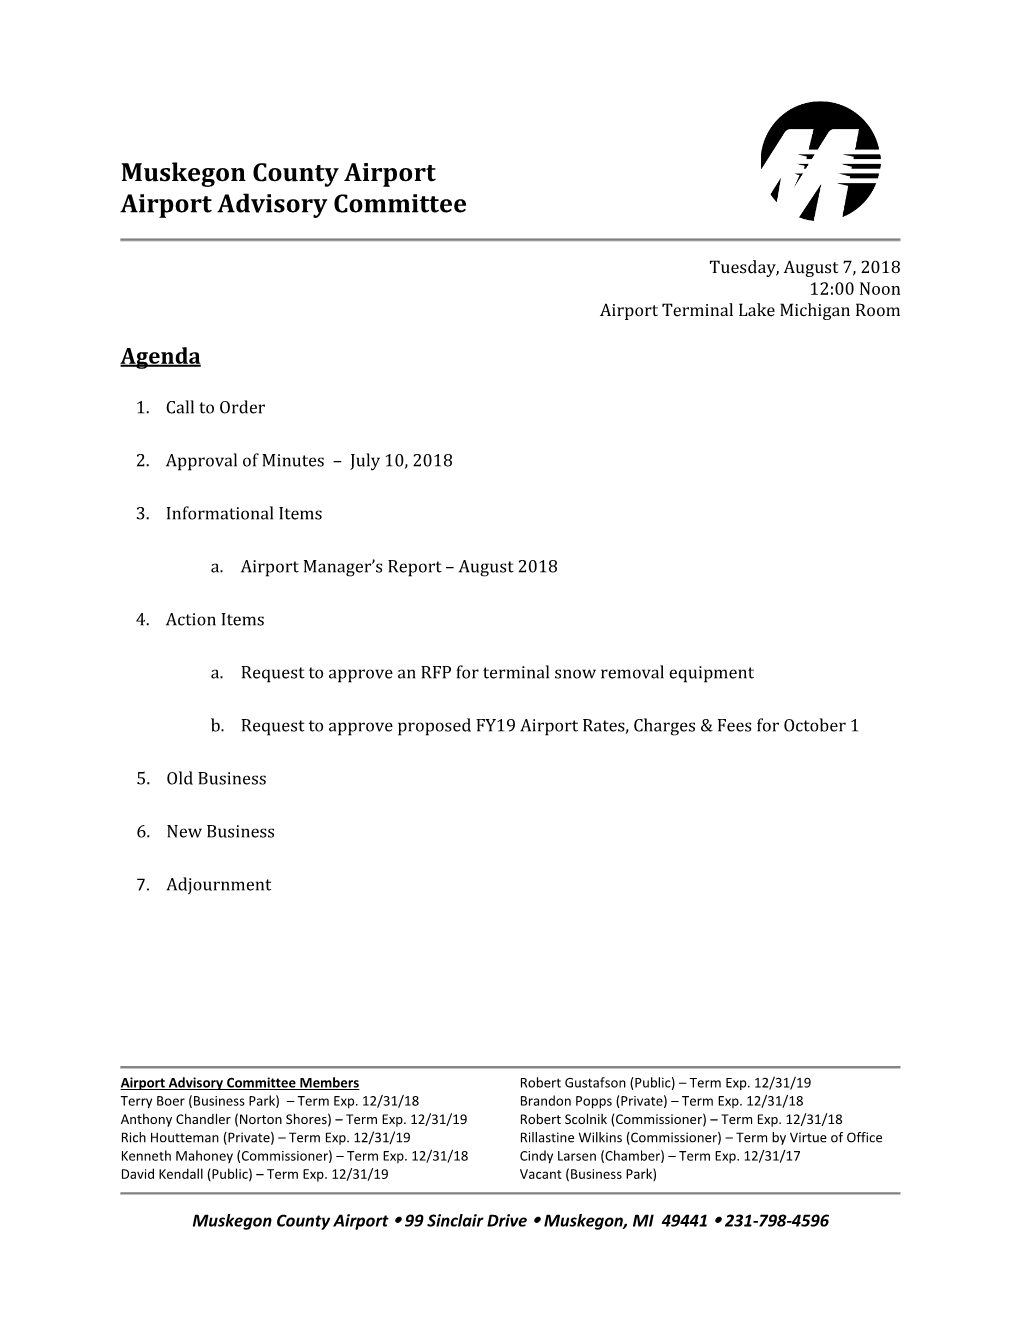 Airport Advisory Committee Agenda August 7, 2018